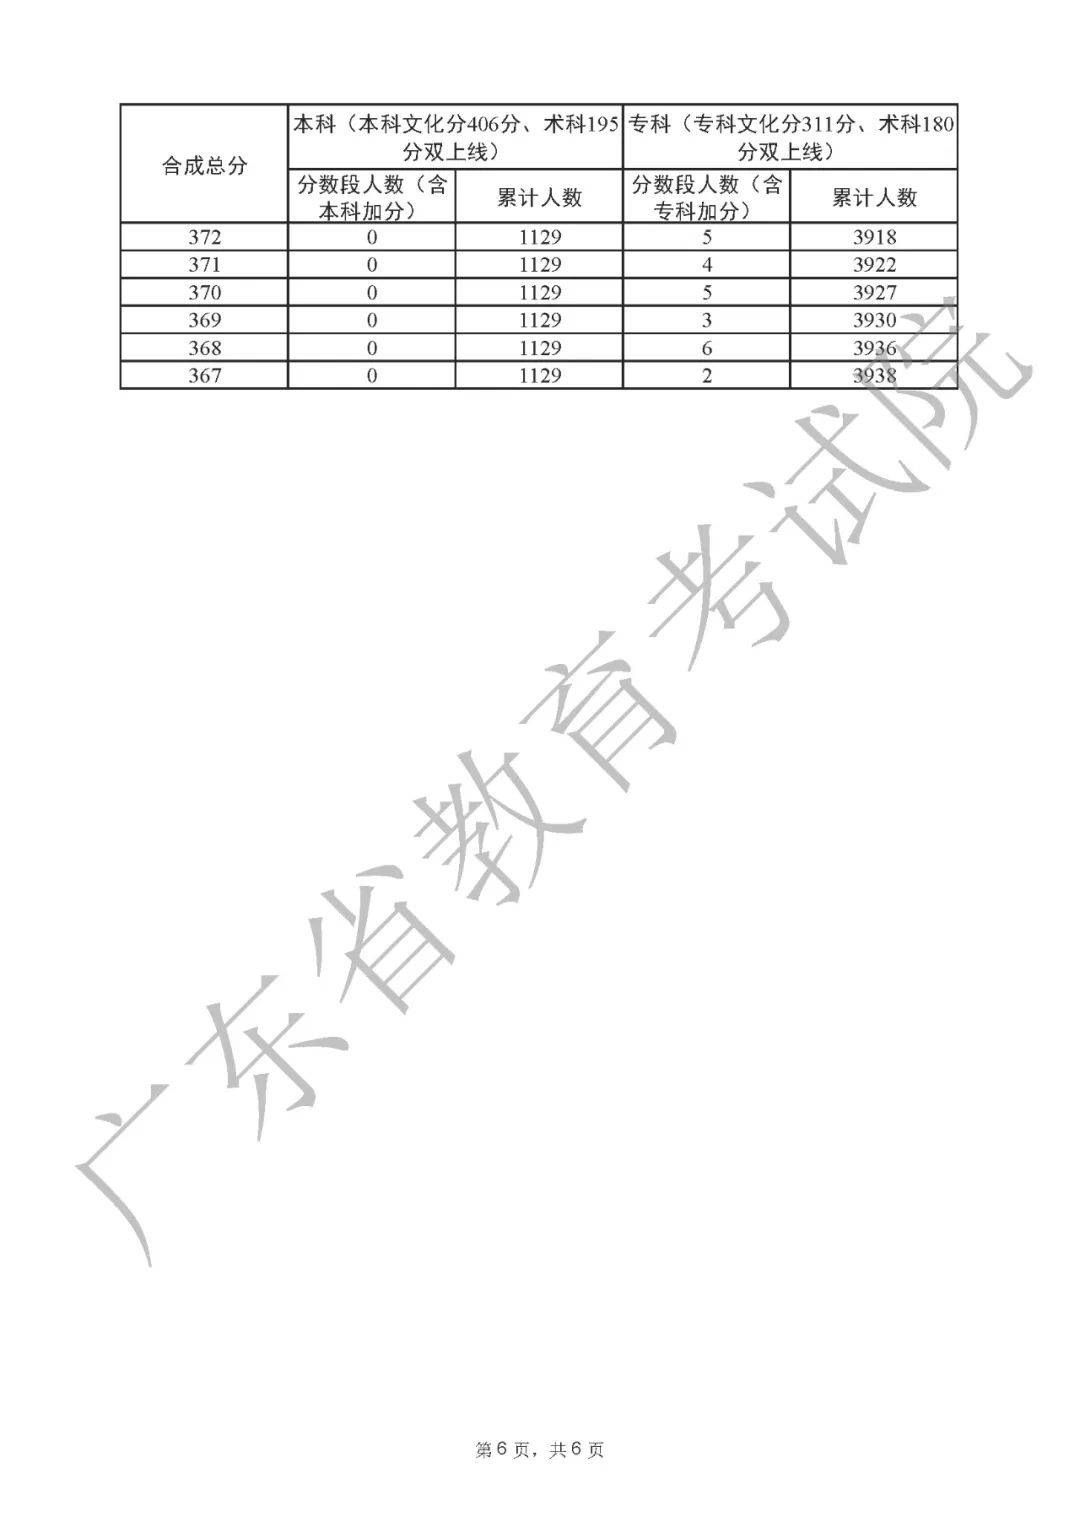 2022年最新广东高考一分一段表